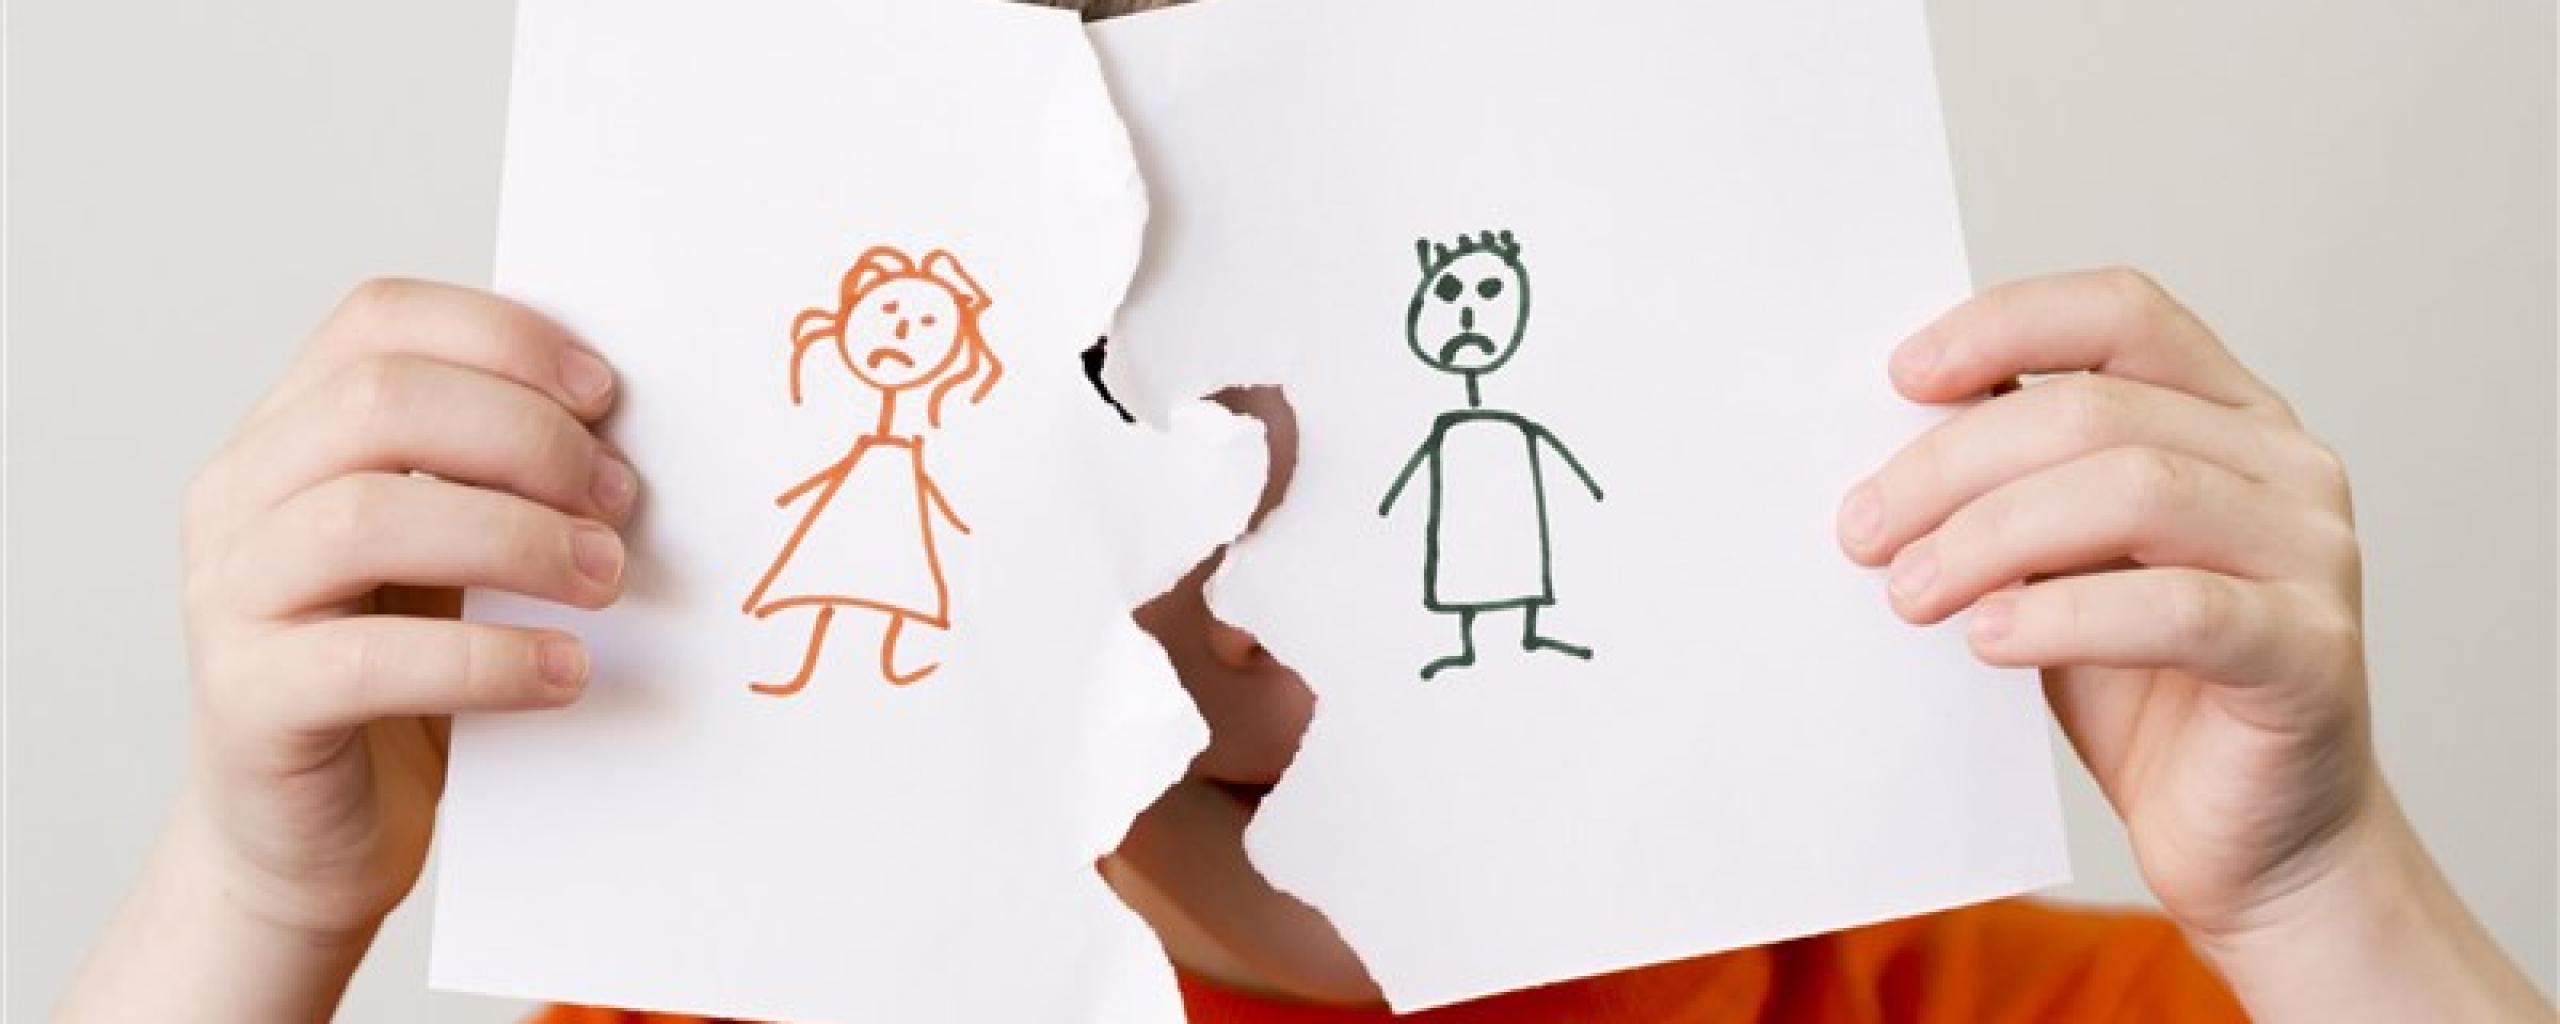 jongen met symbolisch verscheurde tekening van ouders